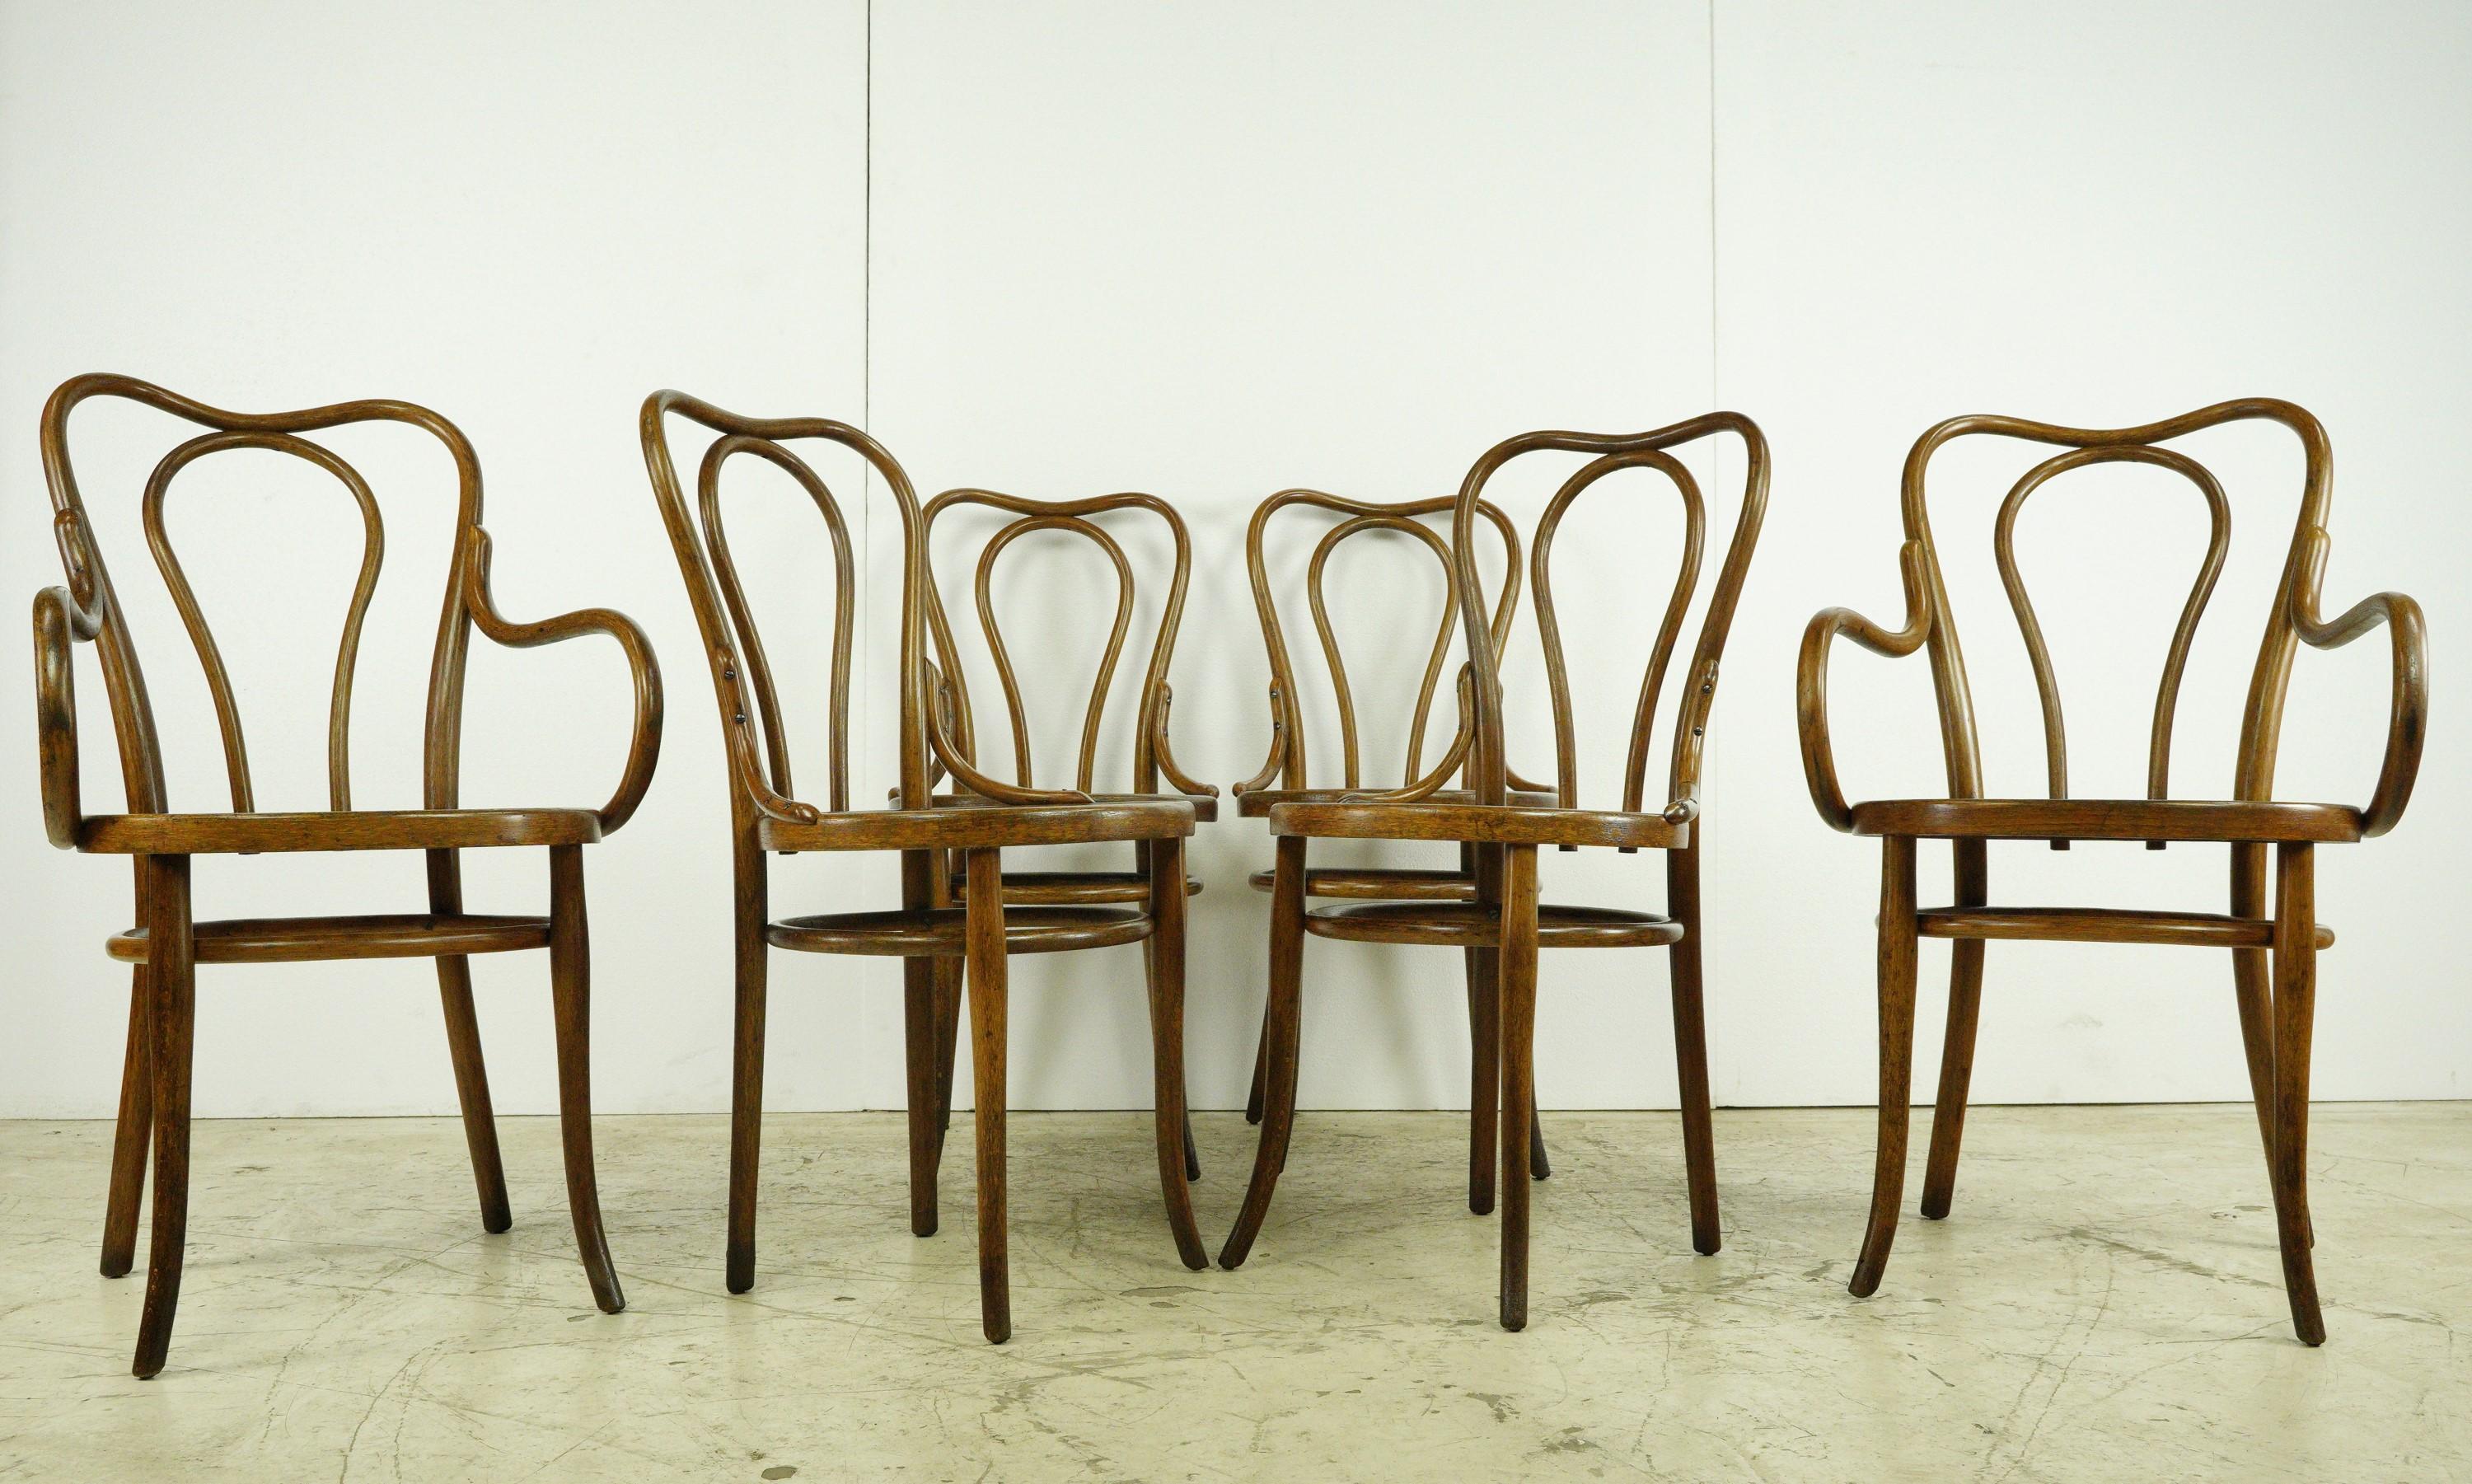 Quatre de ces chaises emblématiques partagent un design classique, tandis que les deux chaises d'extrémité sont dotées d'accoudoirs. Tous présentent un motif en relief assorti. Veuillez voir les photos. Malgré son âge, l'ensemble reste en bon état